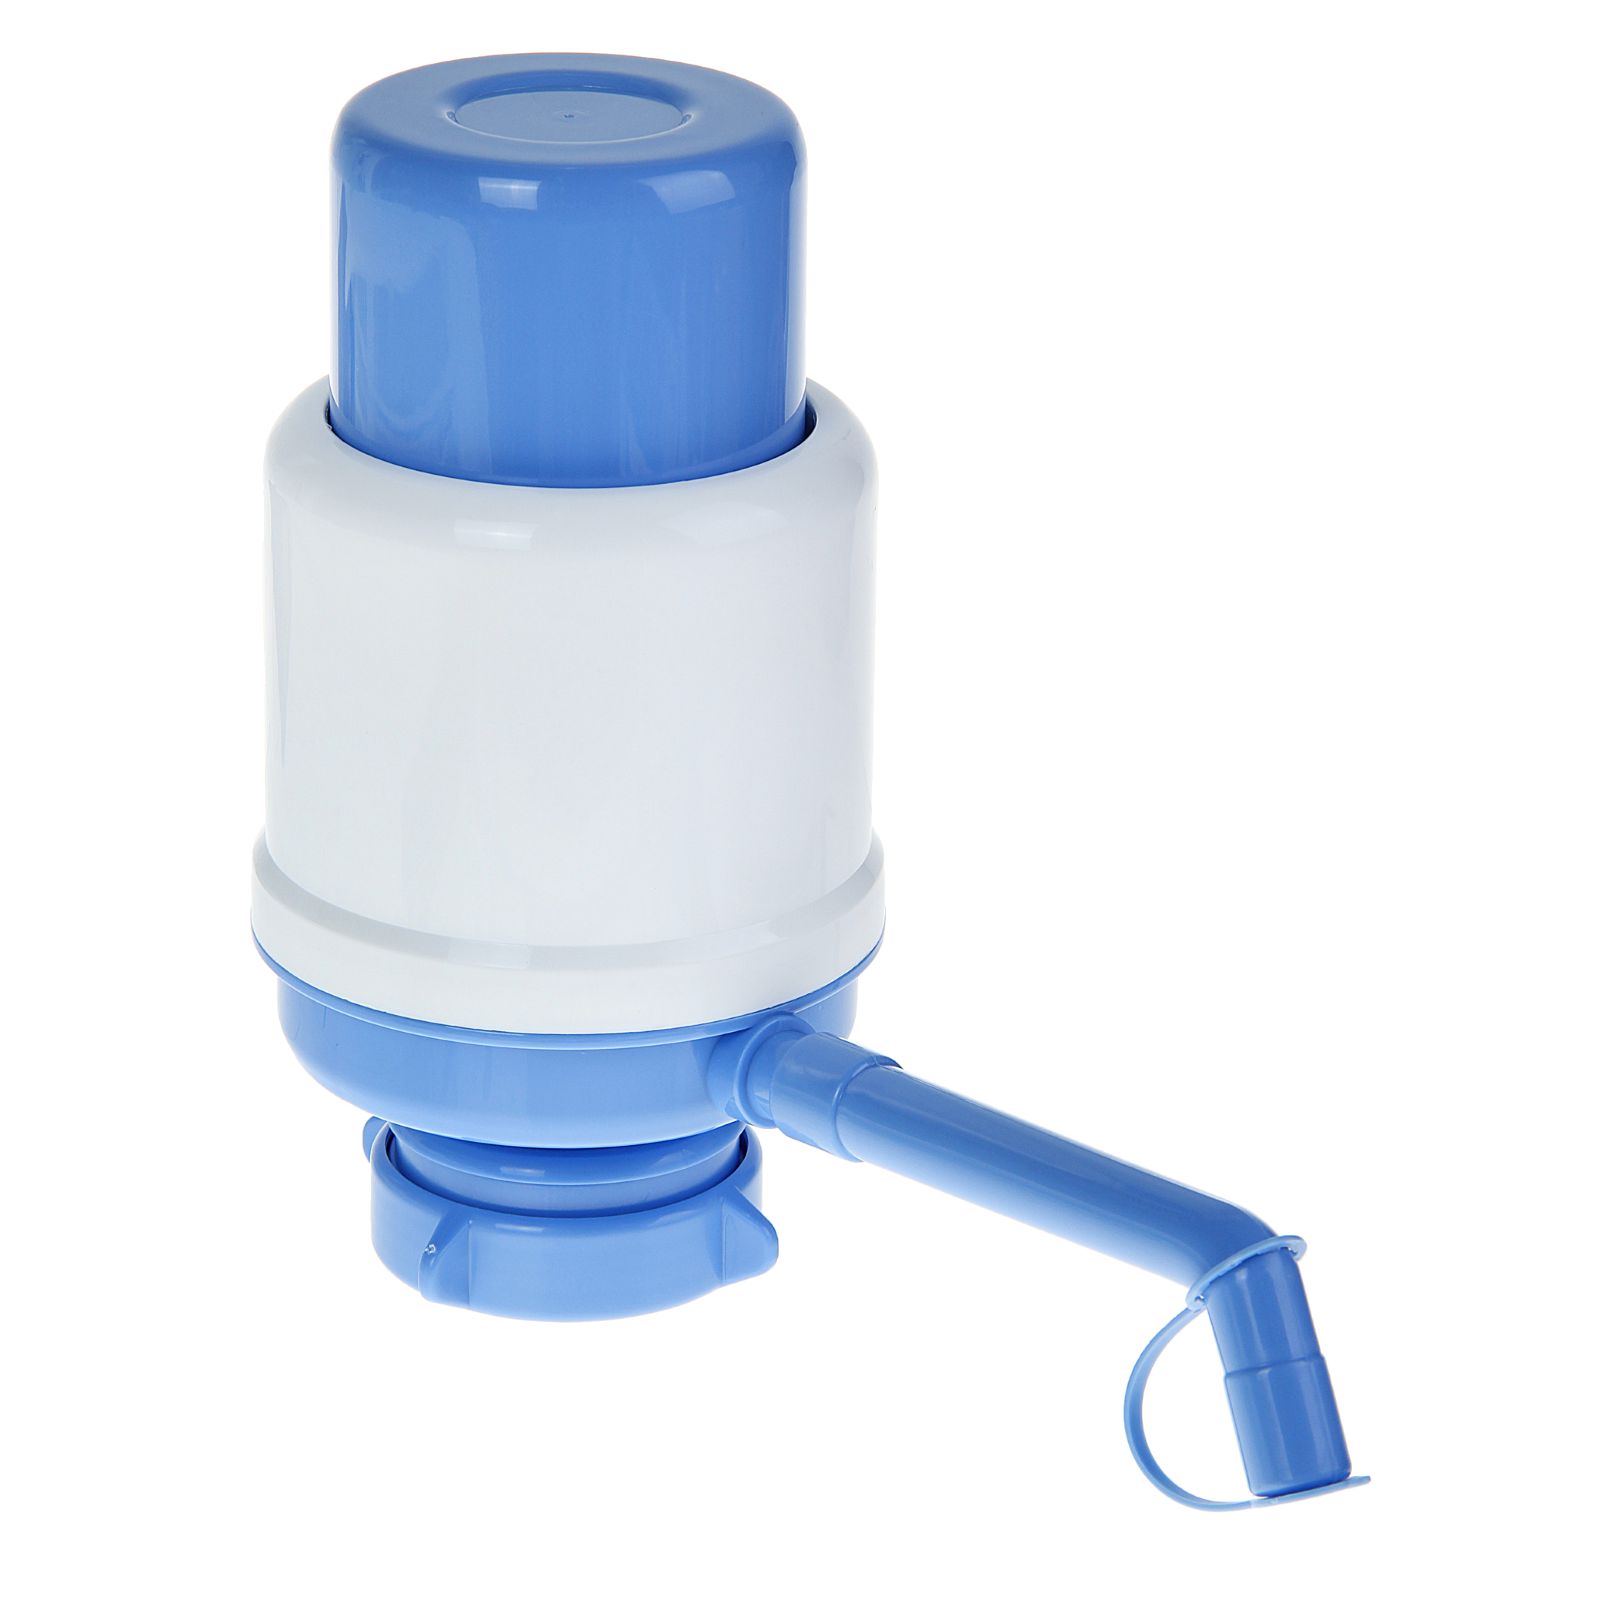 Помпа Sima-Land для воды LESOTO Ideal механическая под бутыль от 11 до 19 л голубая - фото 1